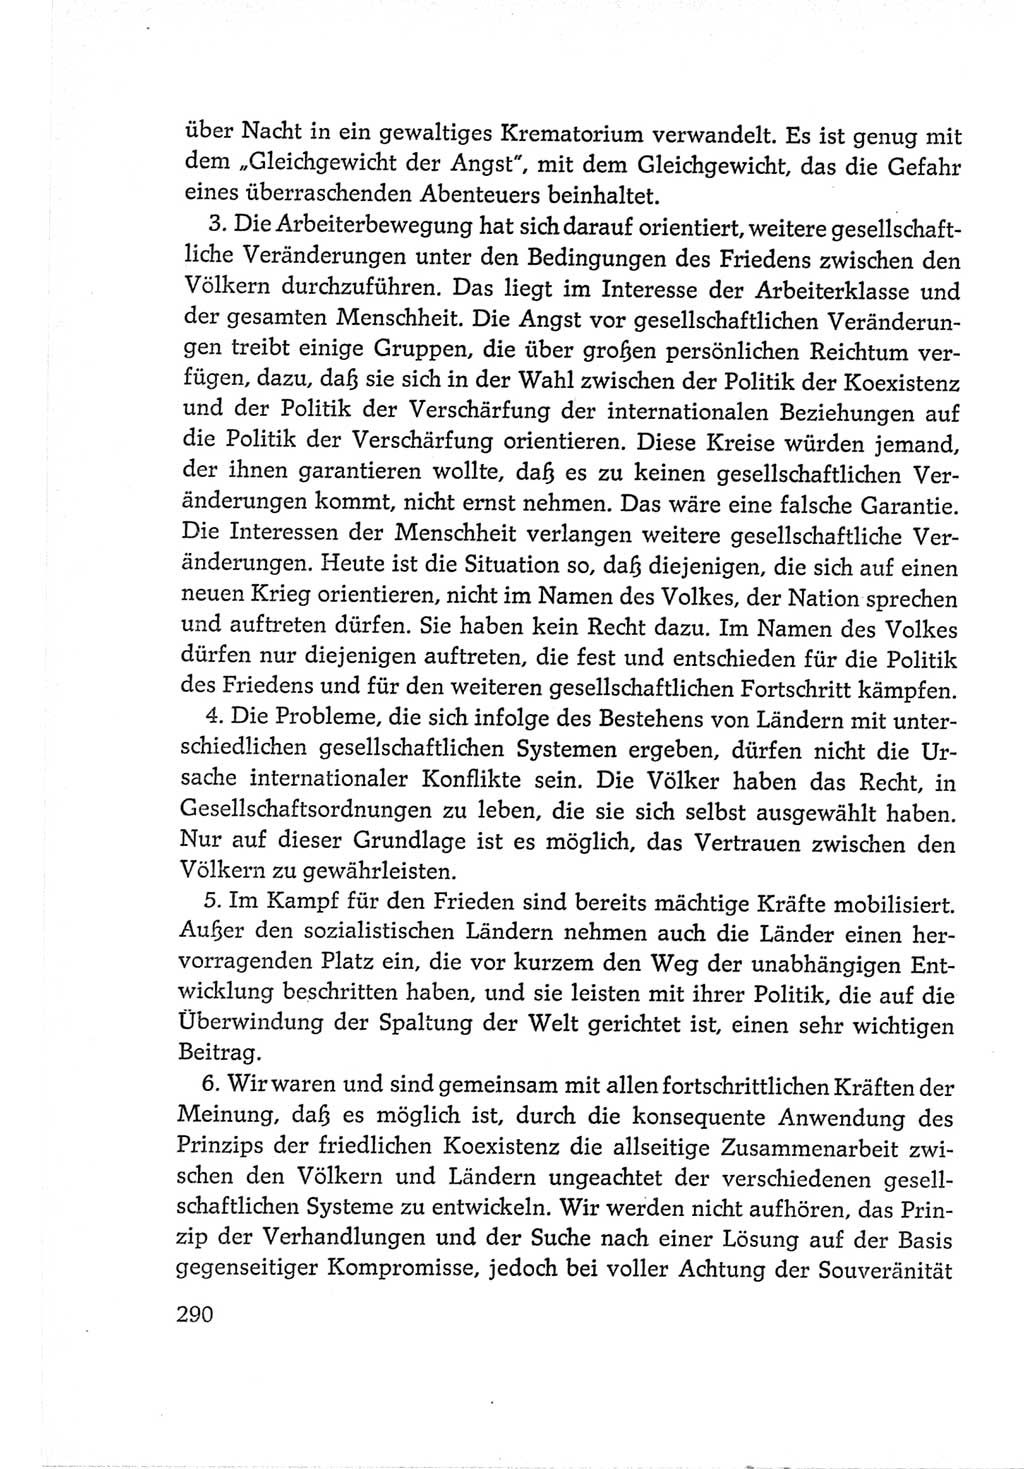 Protokoll der Verhandlungen des Ⅵ. Parteitages der Sozialistischen Einheitspartei Deutschlands (SED) [Deutsche Demokratische Republik (DDR)] 1963, Band Ⅱ, Seite 290 (Prot. Verh. Ⅵ. PT SED DDR 1963, Bd. Ⅱ, S. 290)